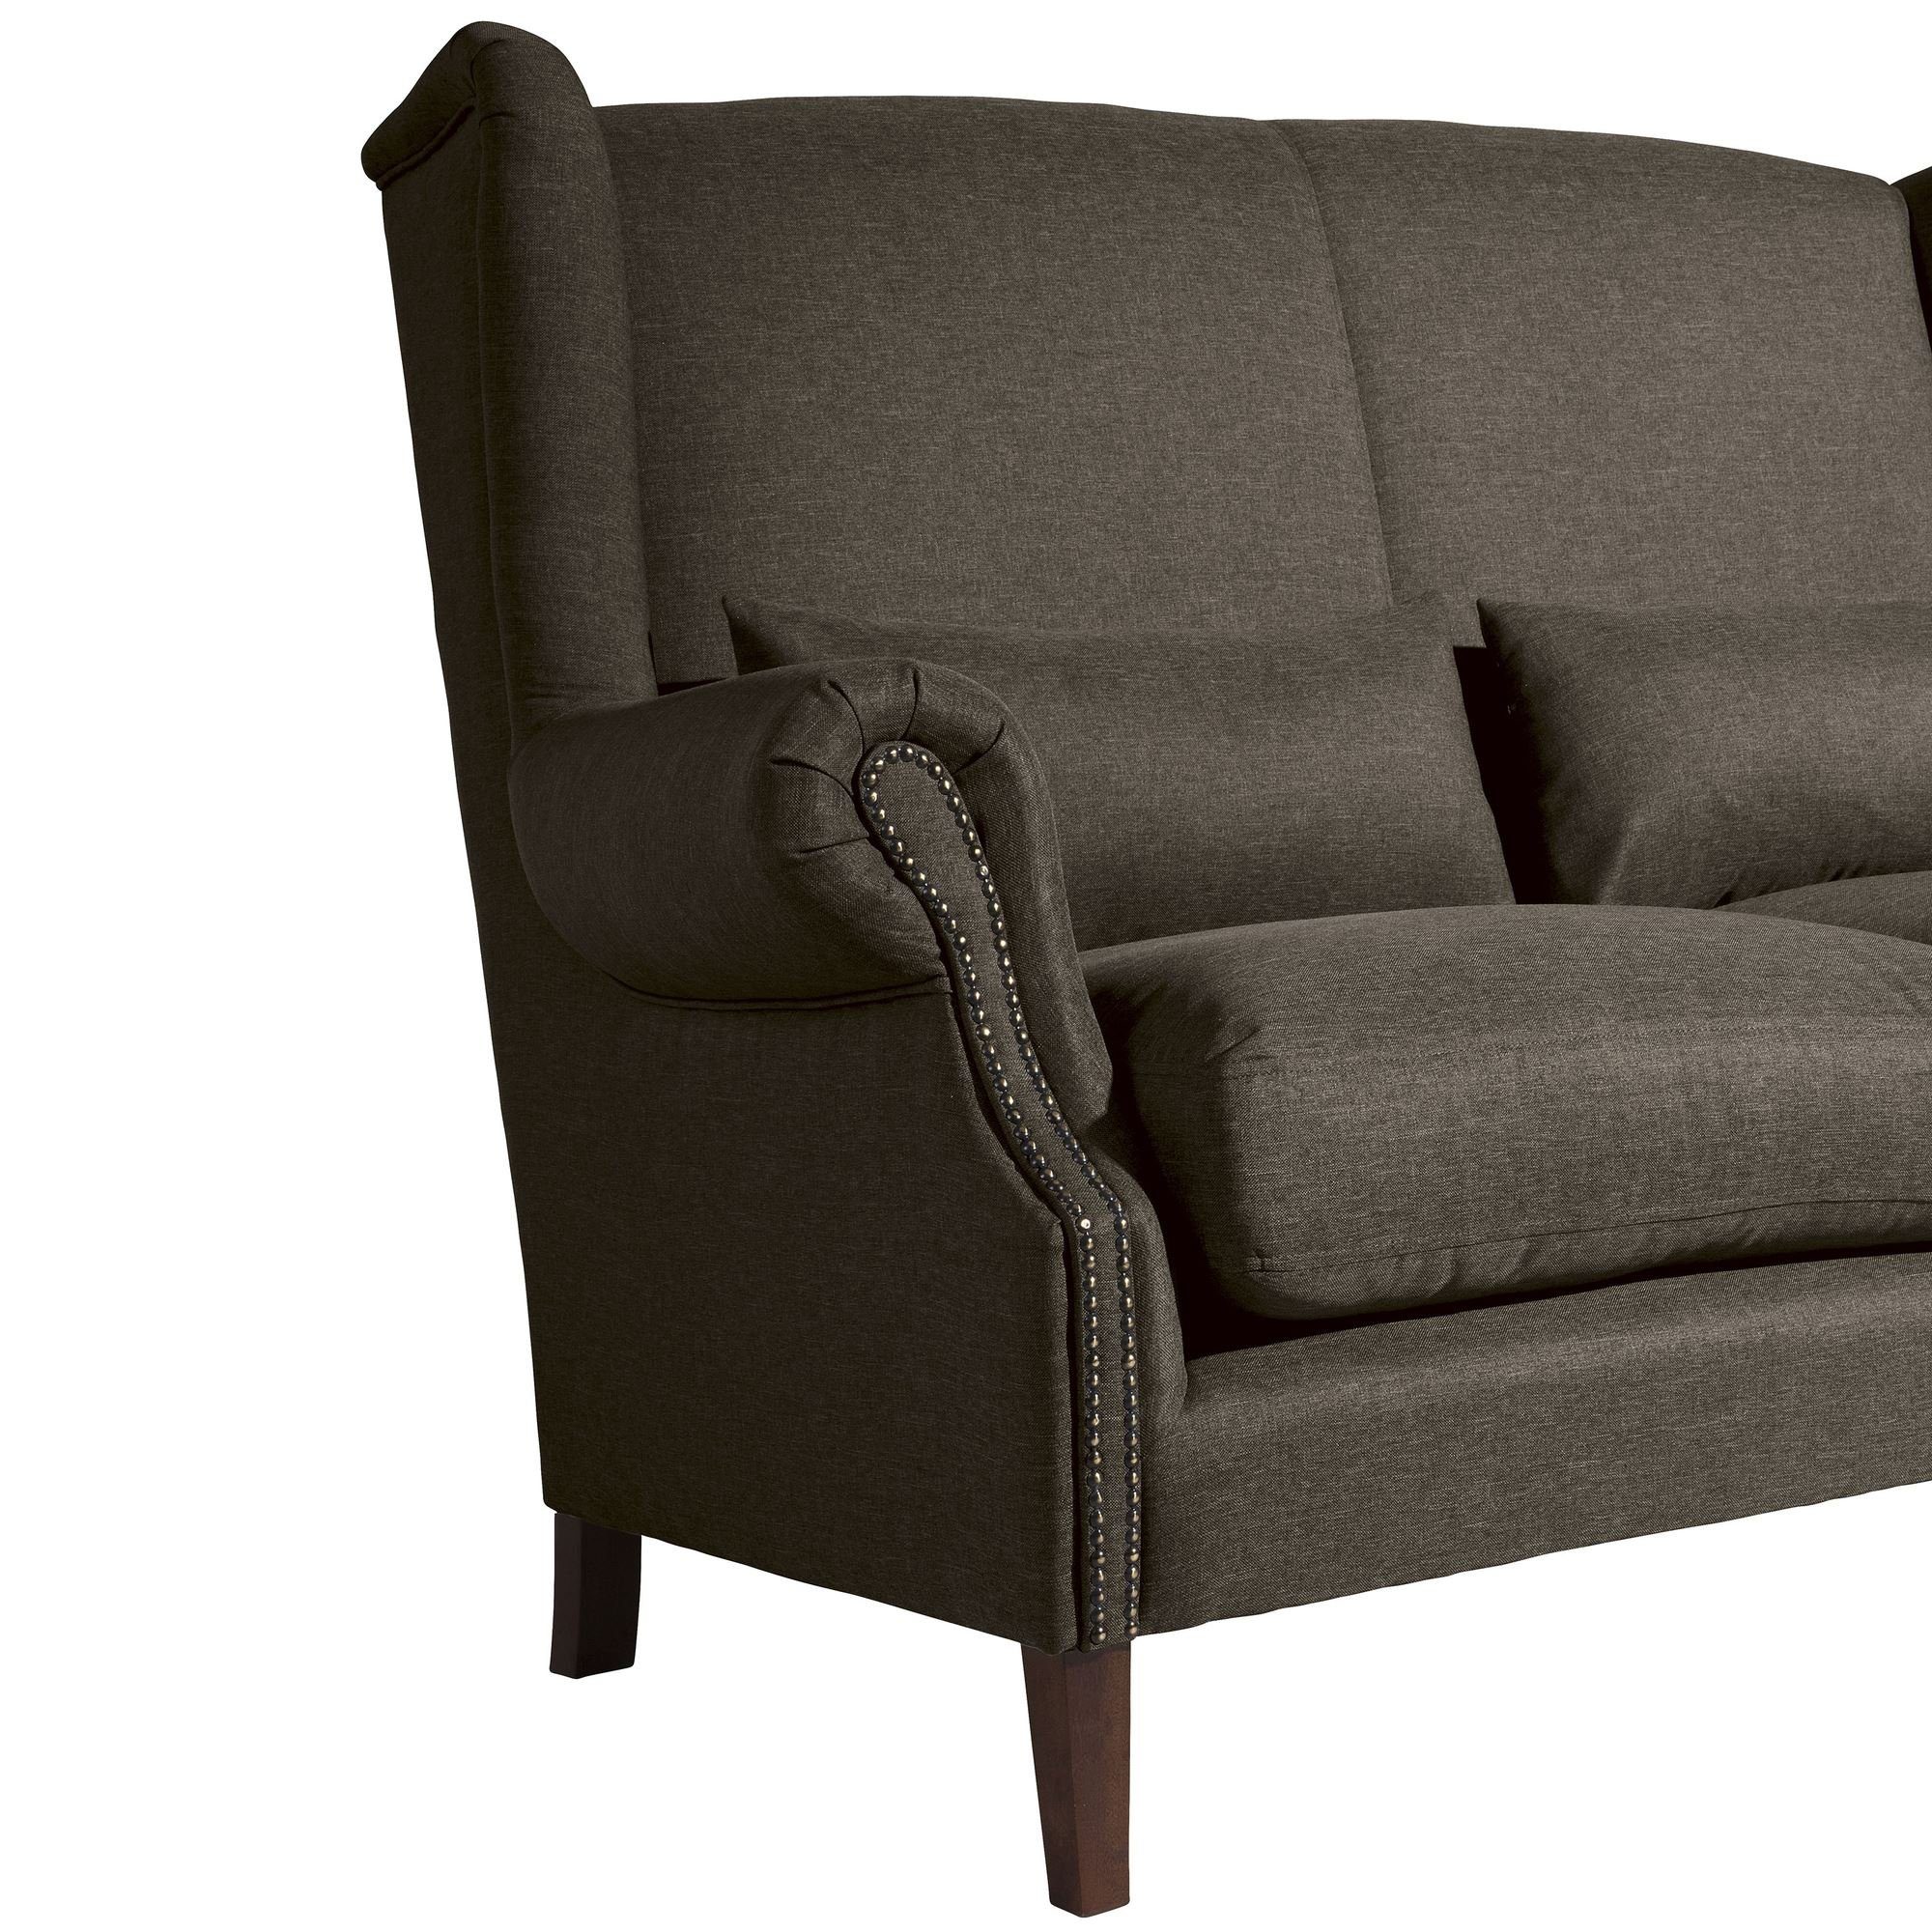 58 Kandy Buche 1 aufm Versand 2-Sitzer verarbeitet,bequemer Sofa Sofa Kostenlosem Sitz Flachgewebe Bezug Sparpreis hochwertig Kessel nussba, Teile, inkl.